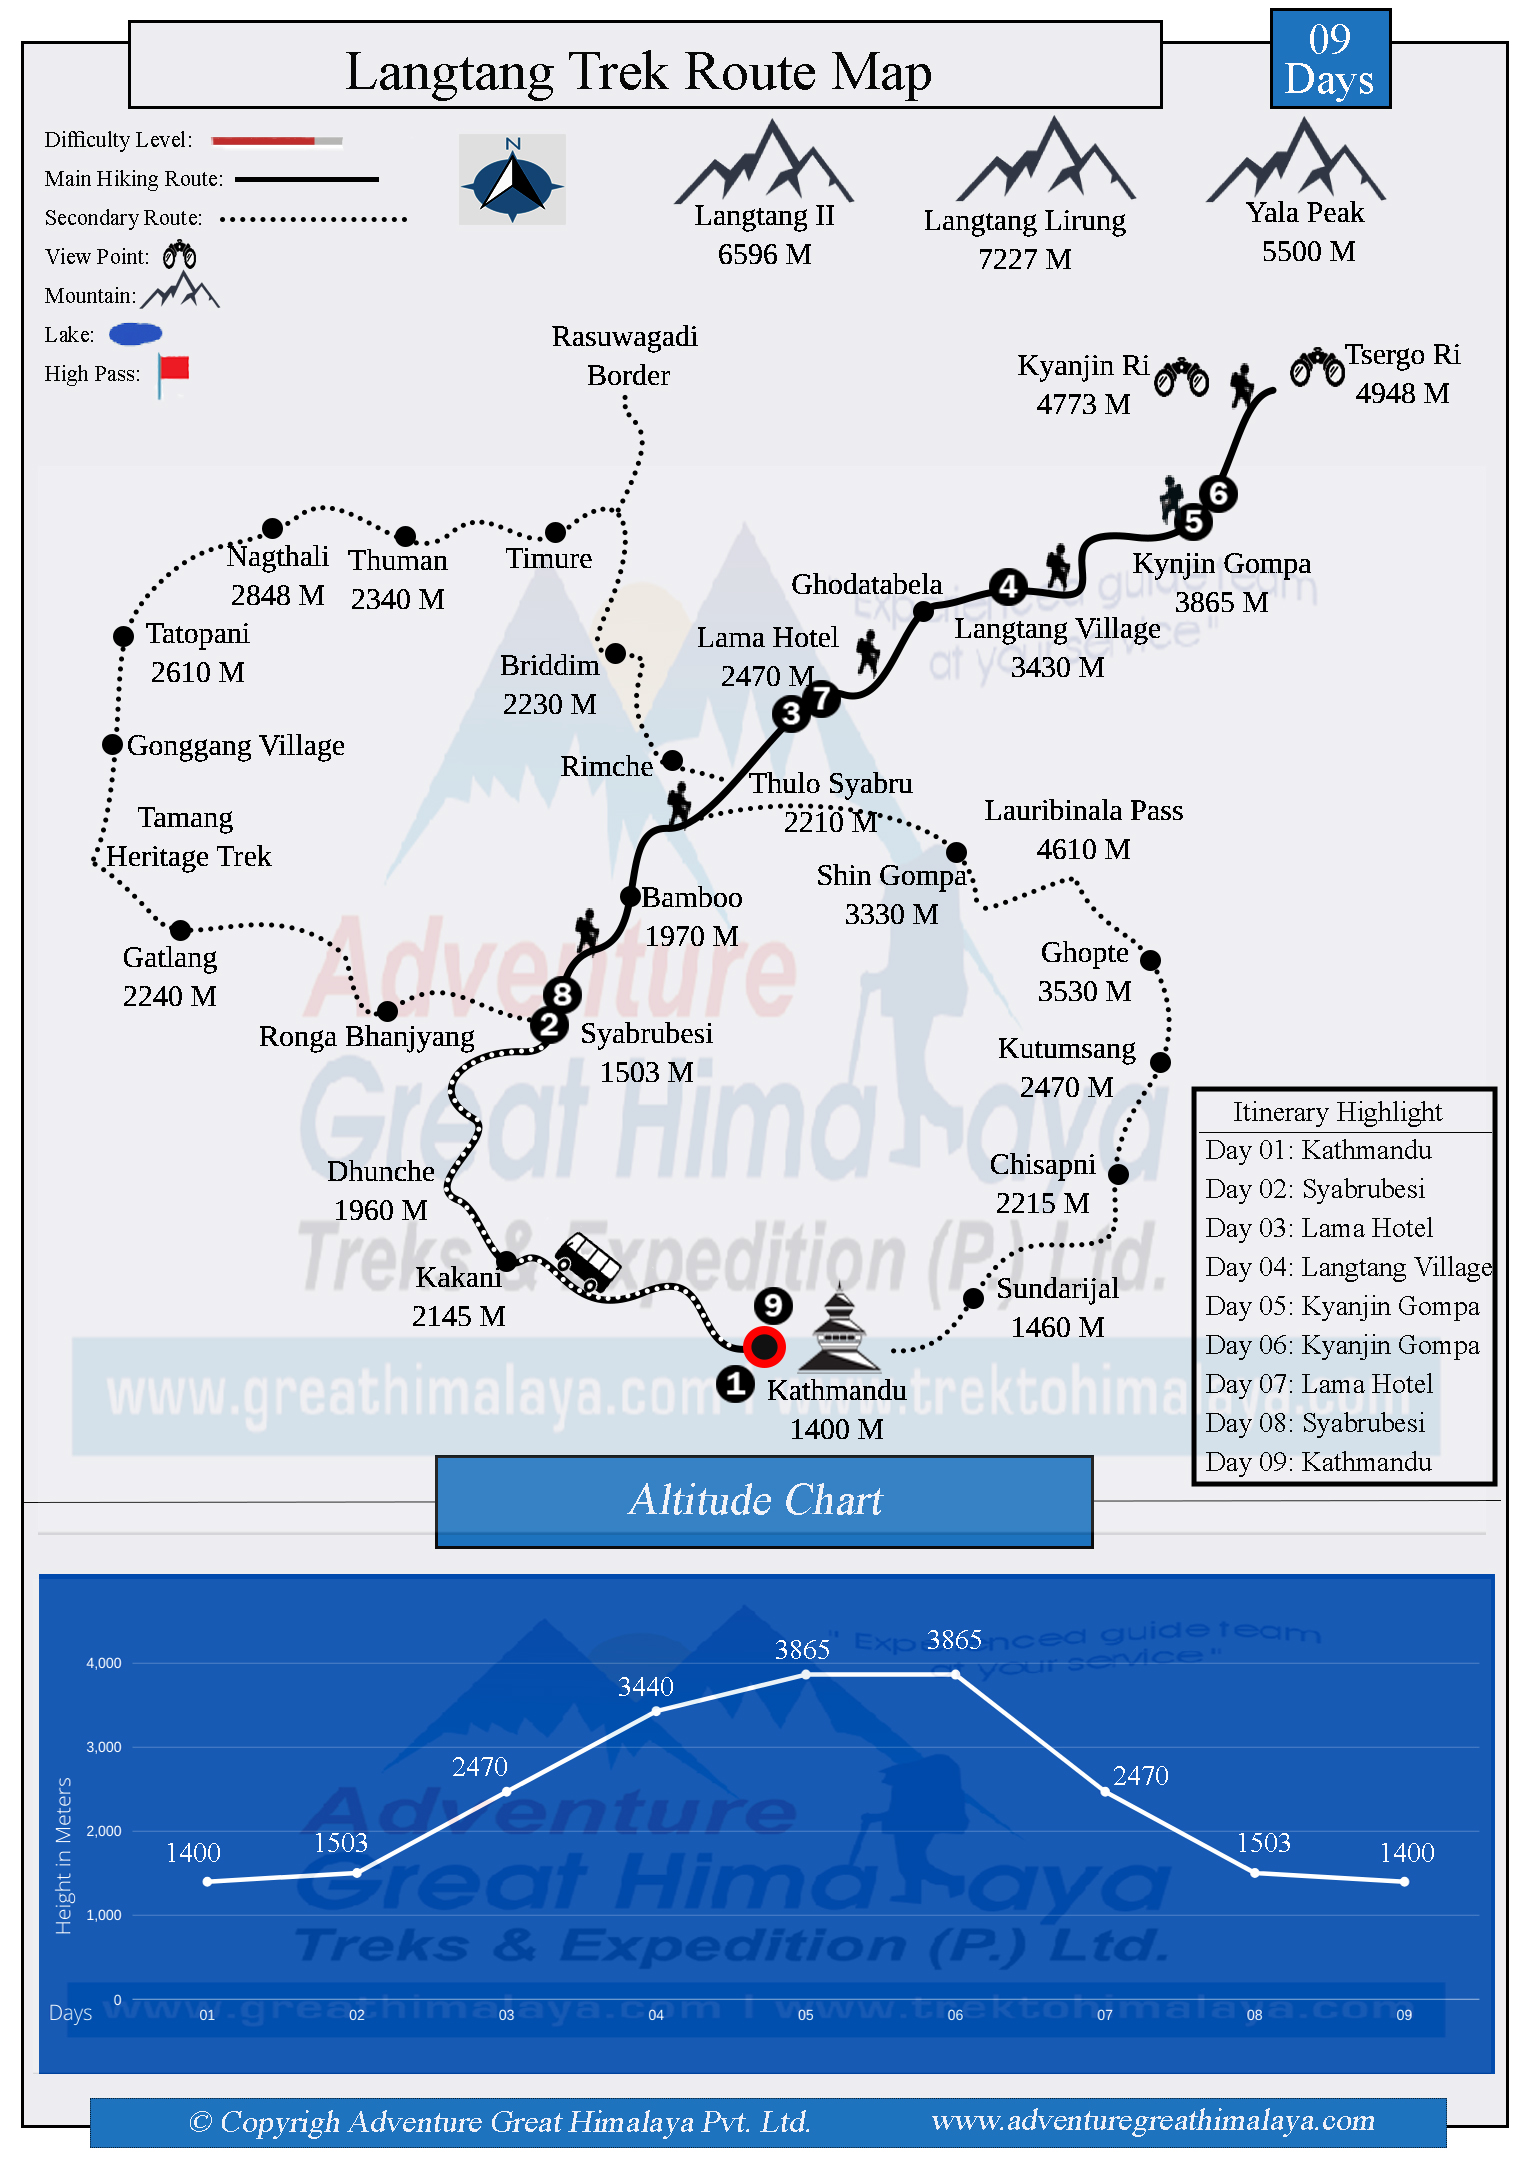 Langtang Trek Route Map